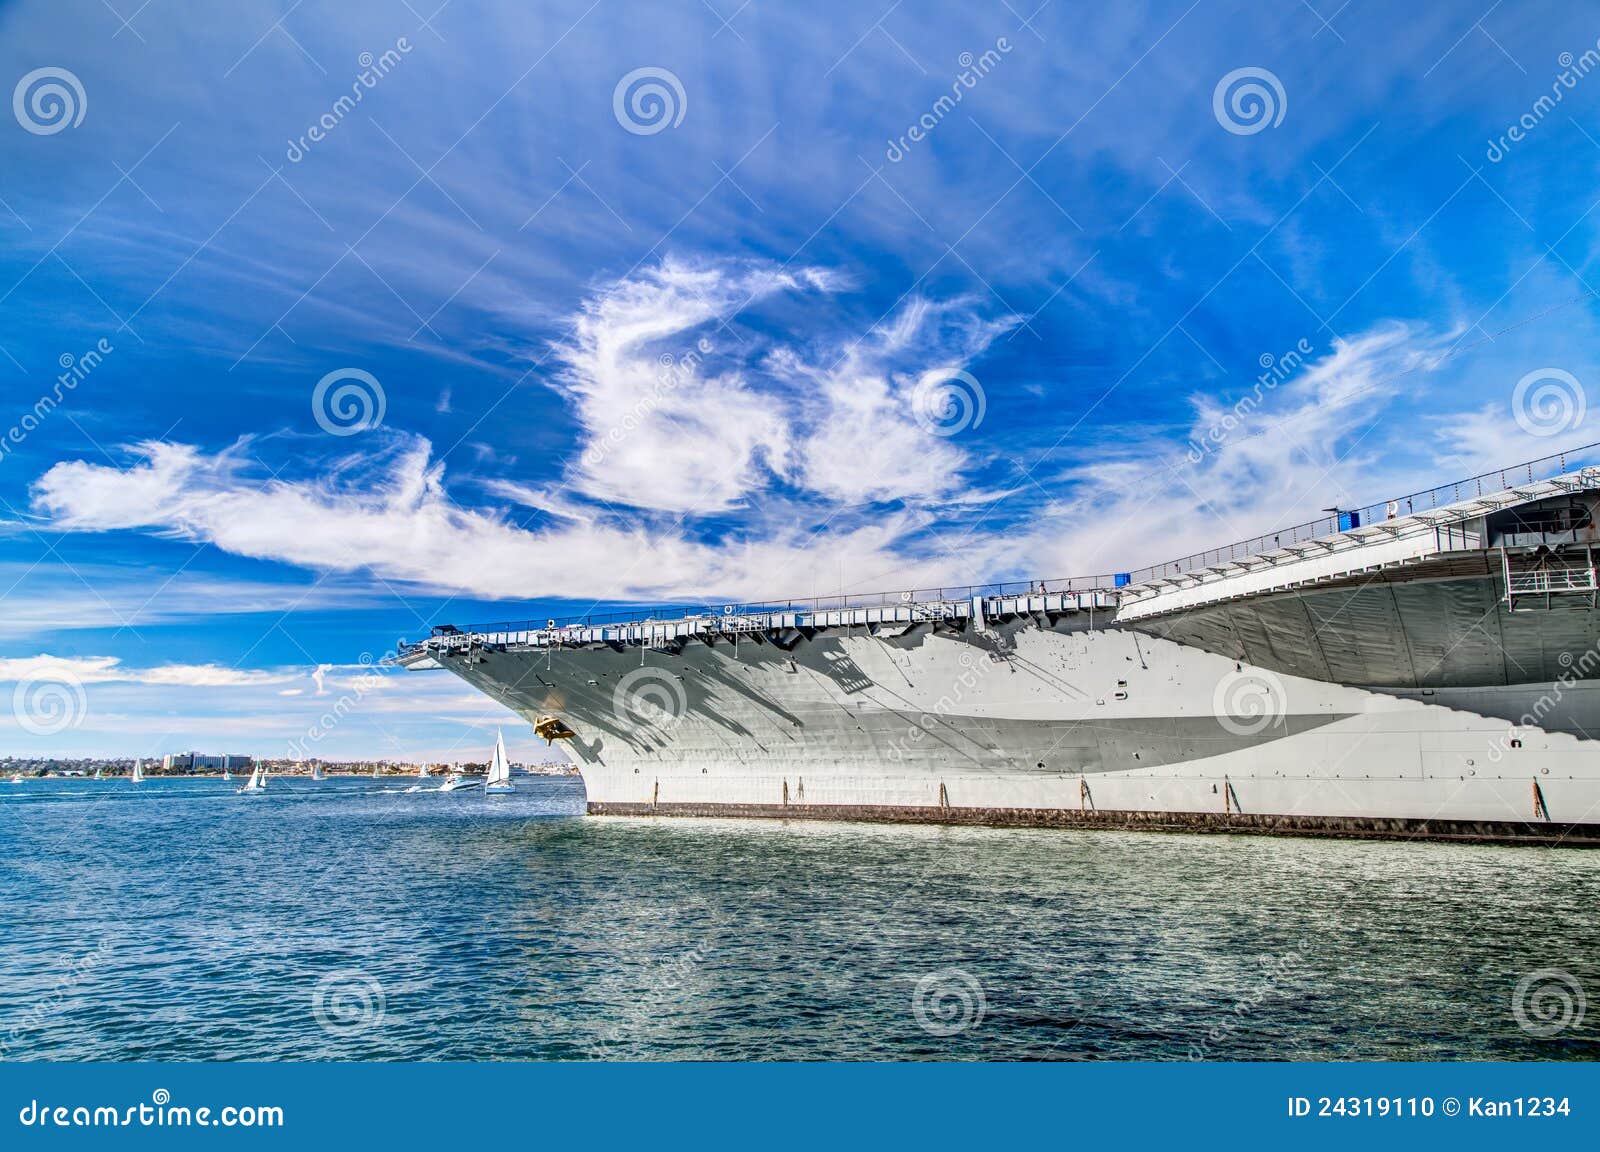 uss midway aircraft carrier